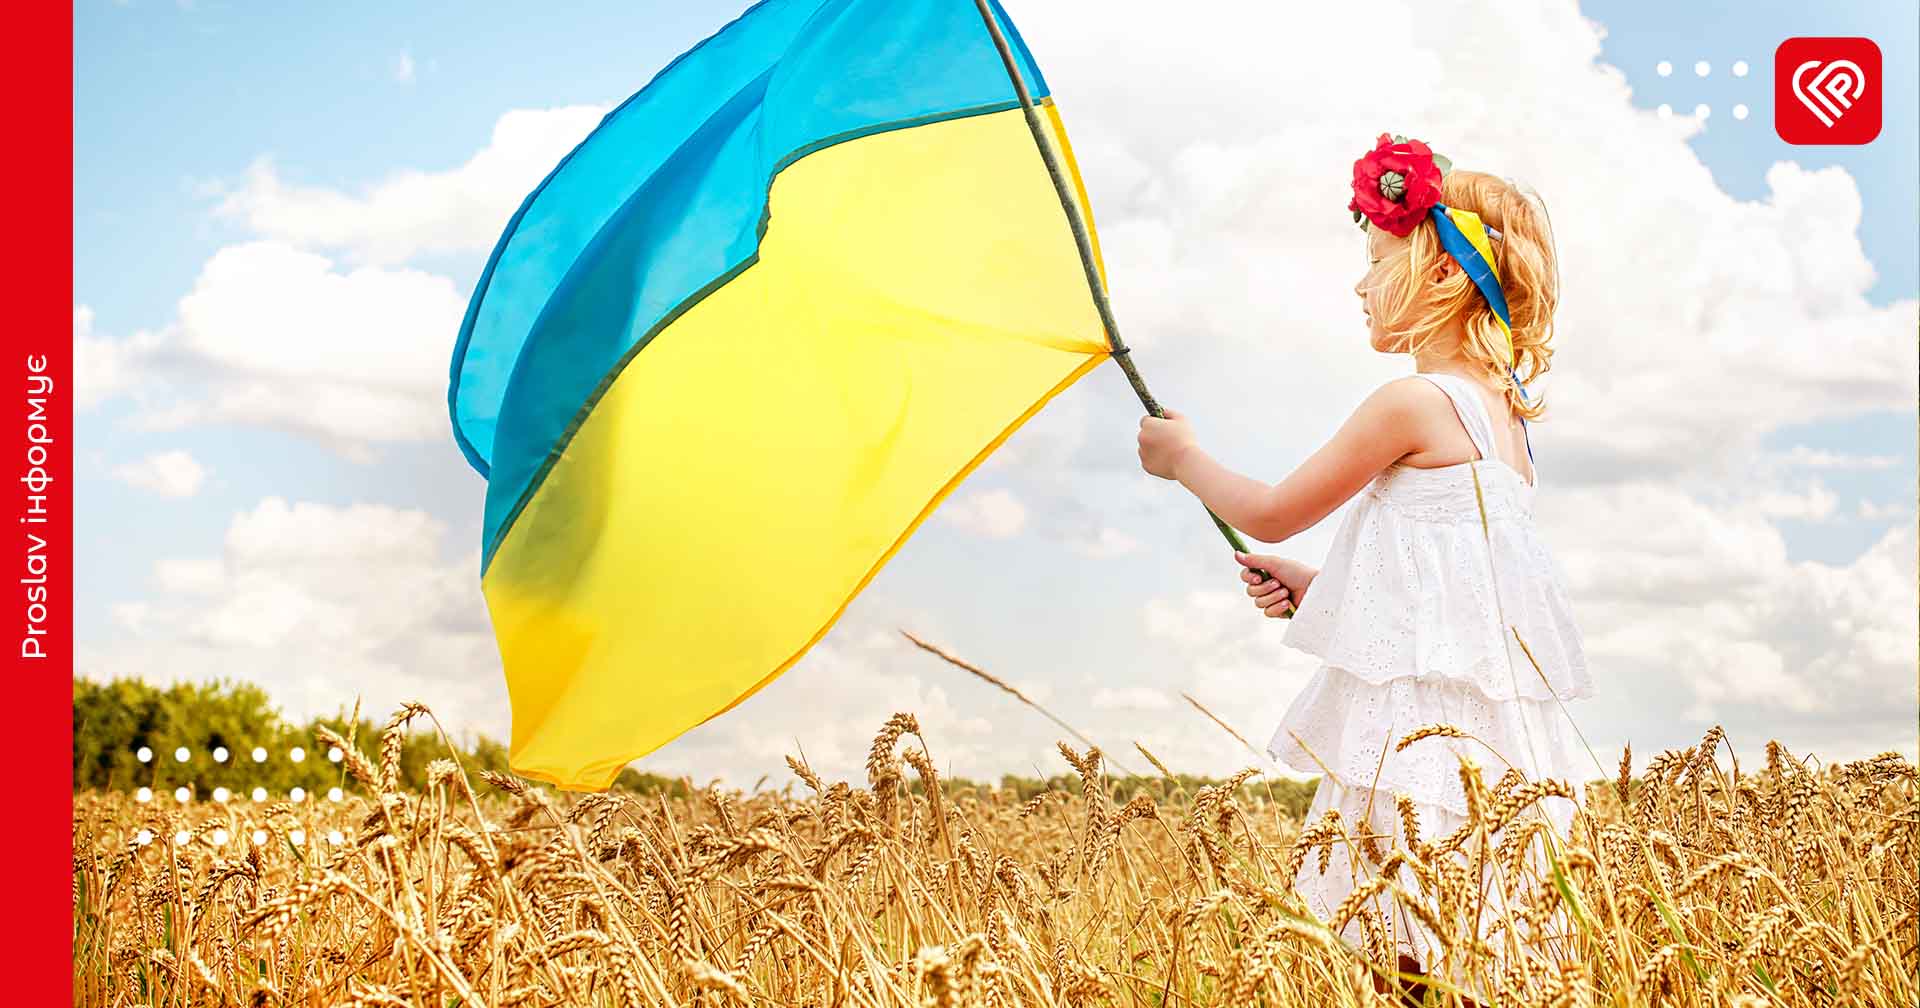 28 червня – День Конституції України: цікаві факти про головний документ держави